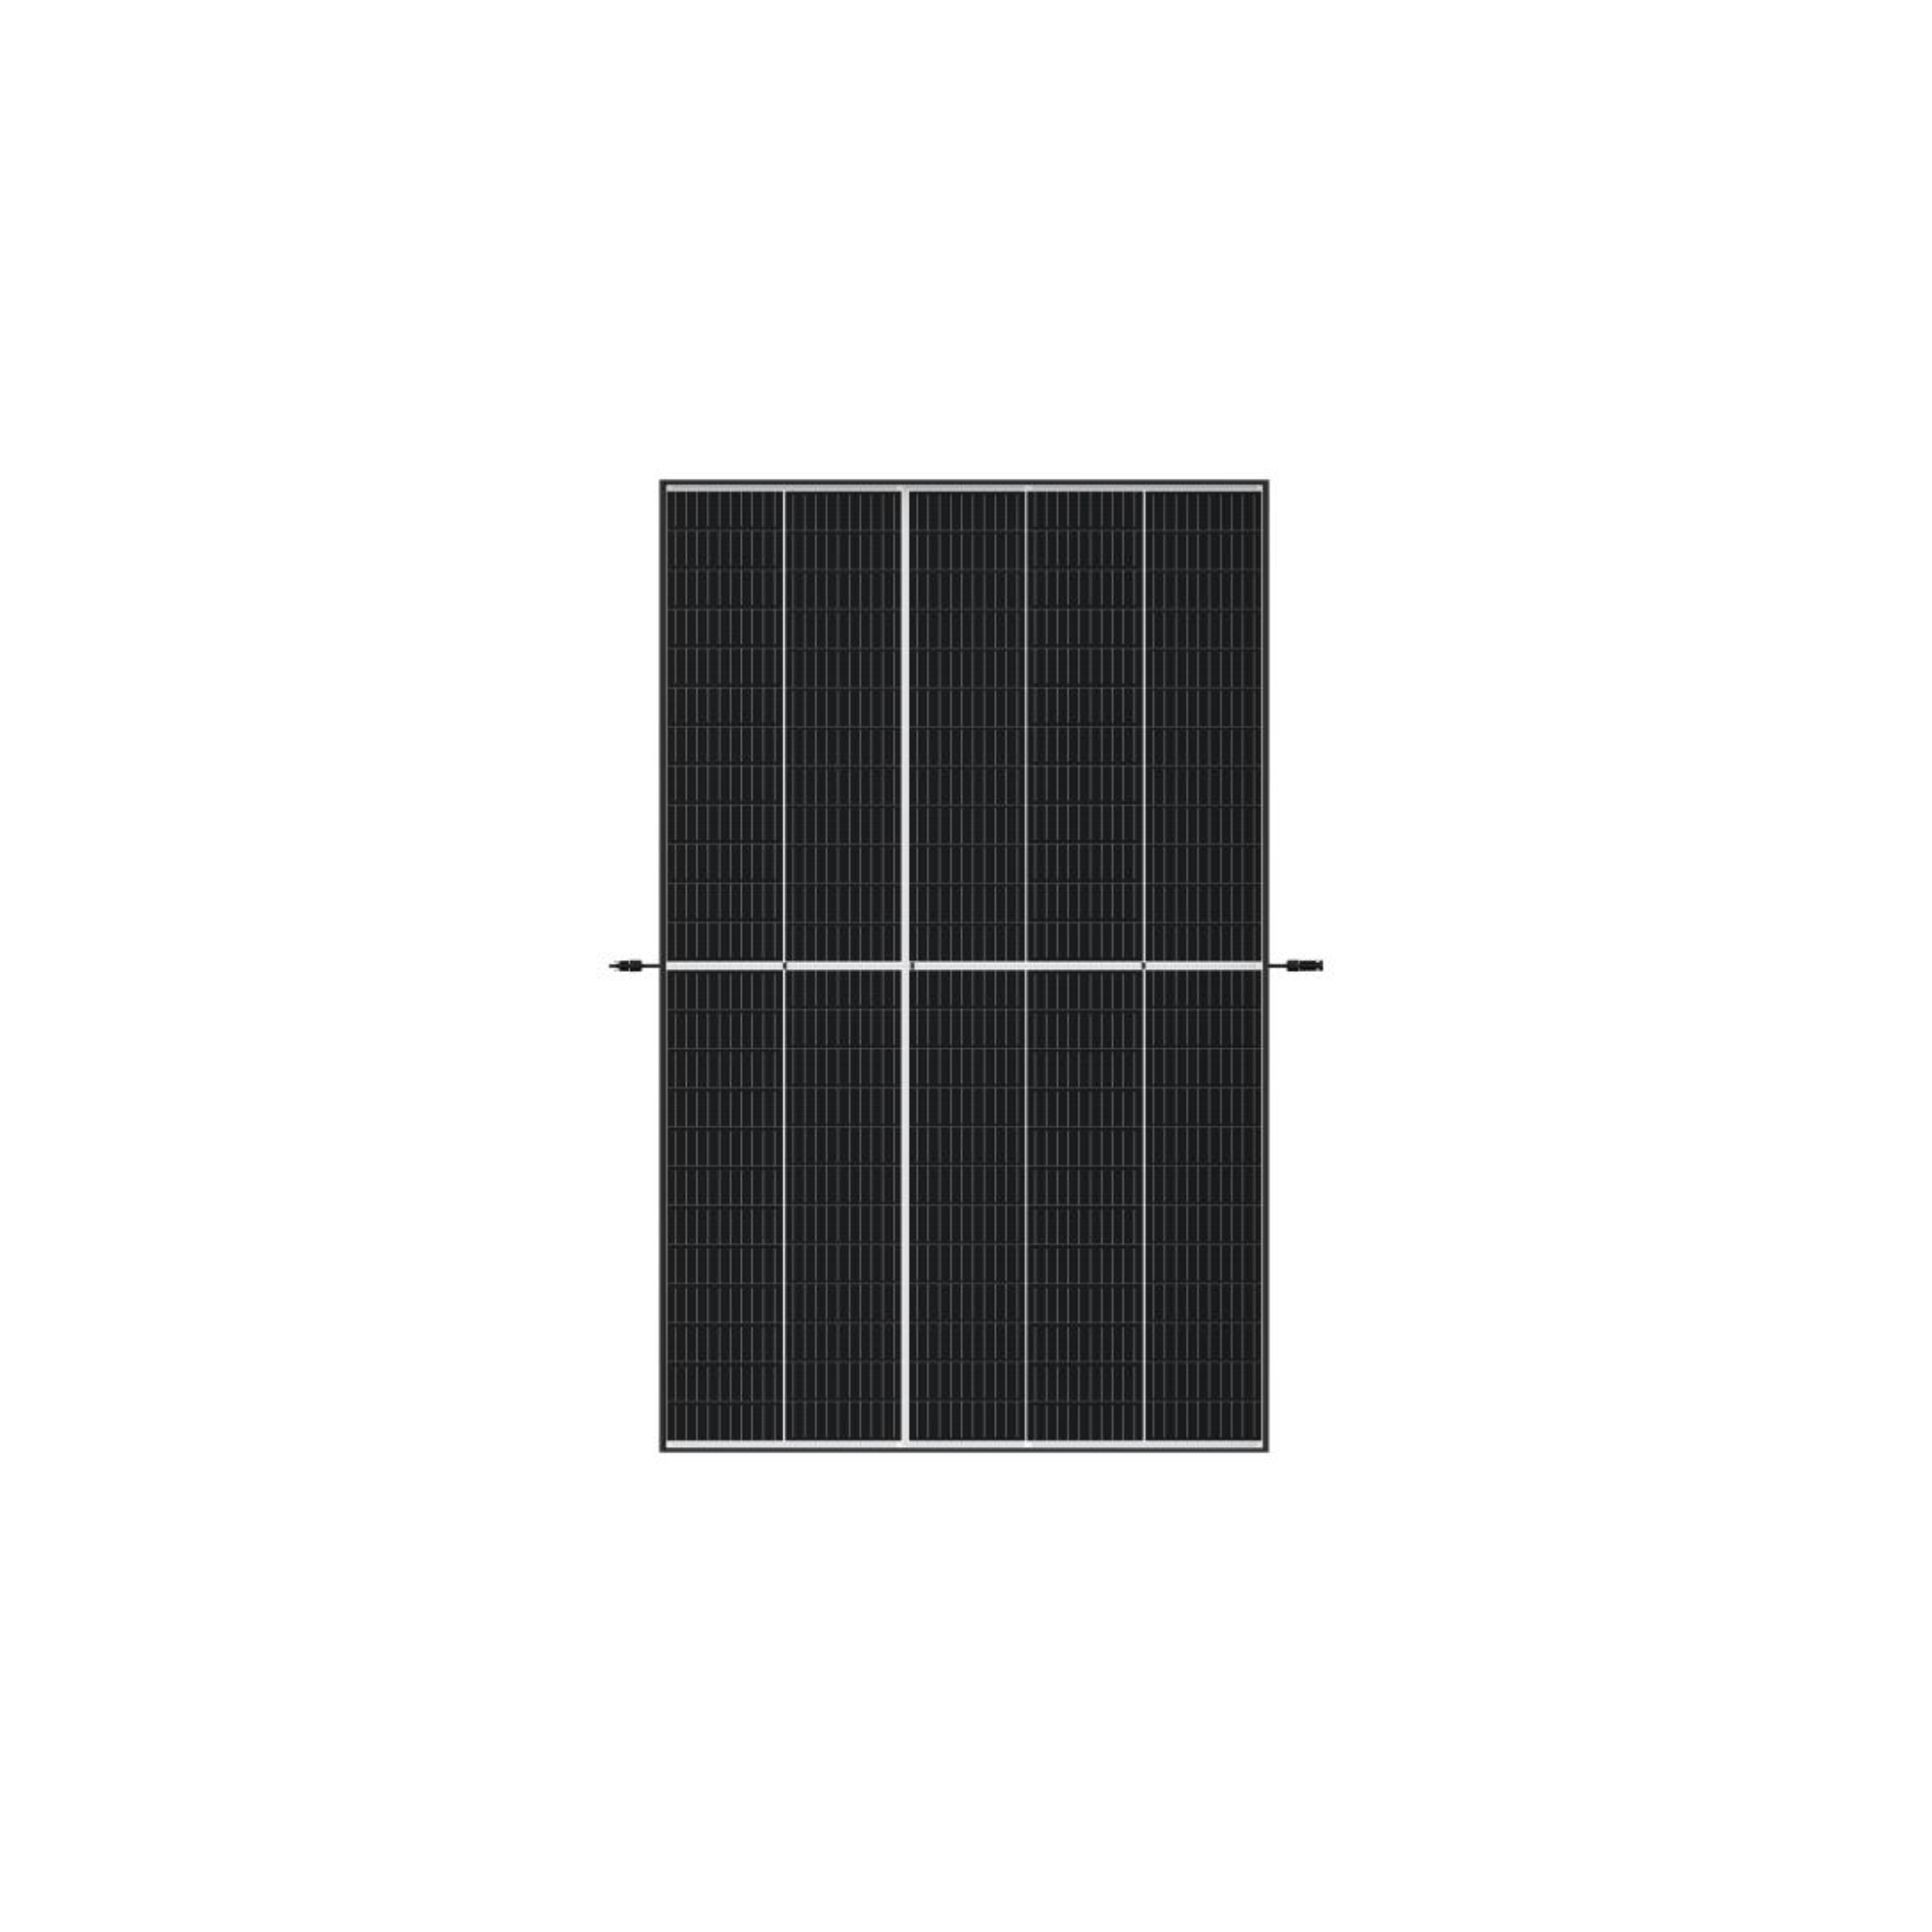 Trina Solar TSM-DE09.08